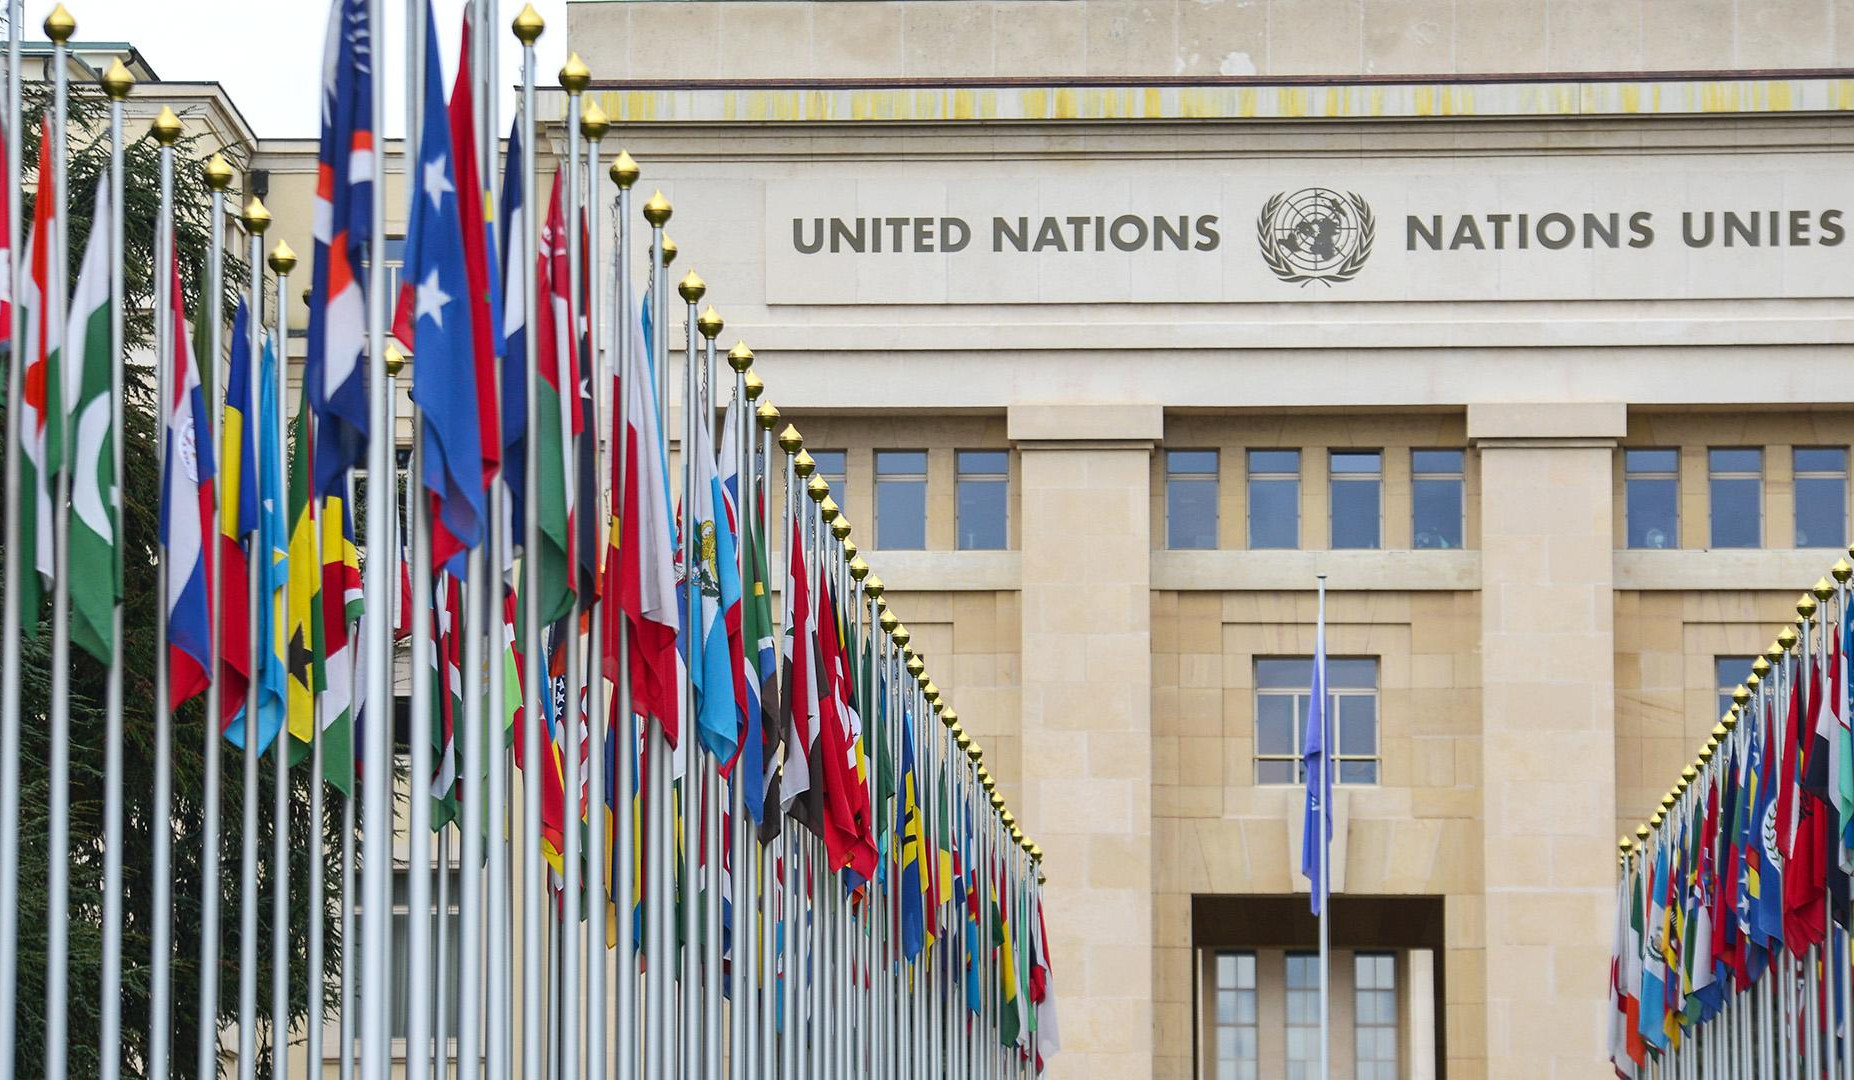 ՄԱԿ-ի անդամ 8 երկիր զրկվել է ձայնի իրավունքից